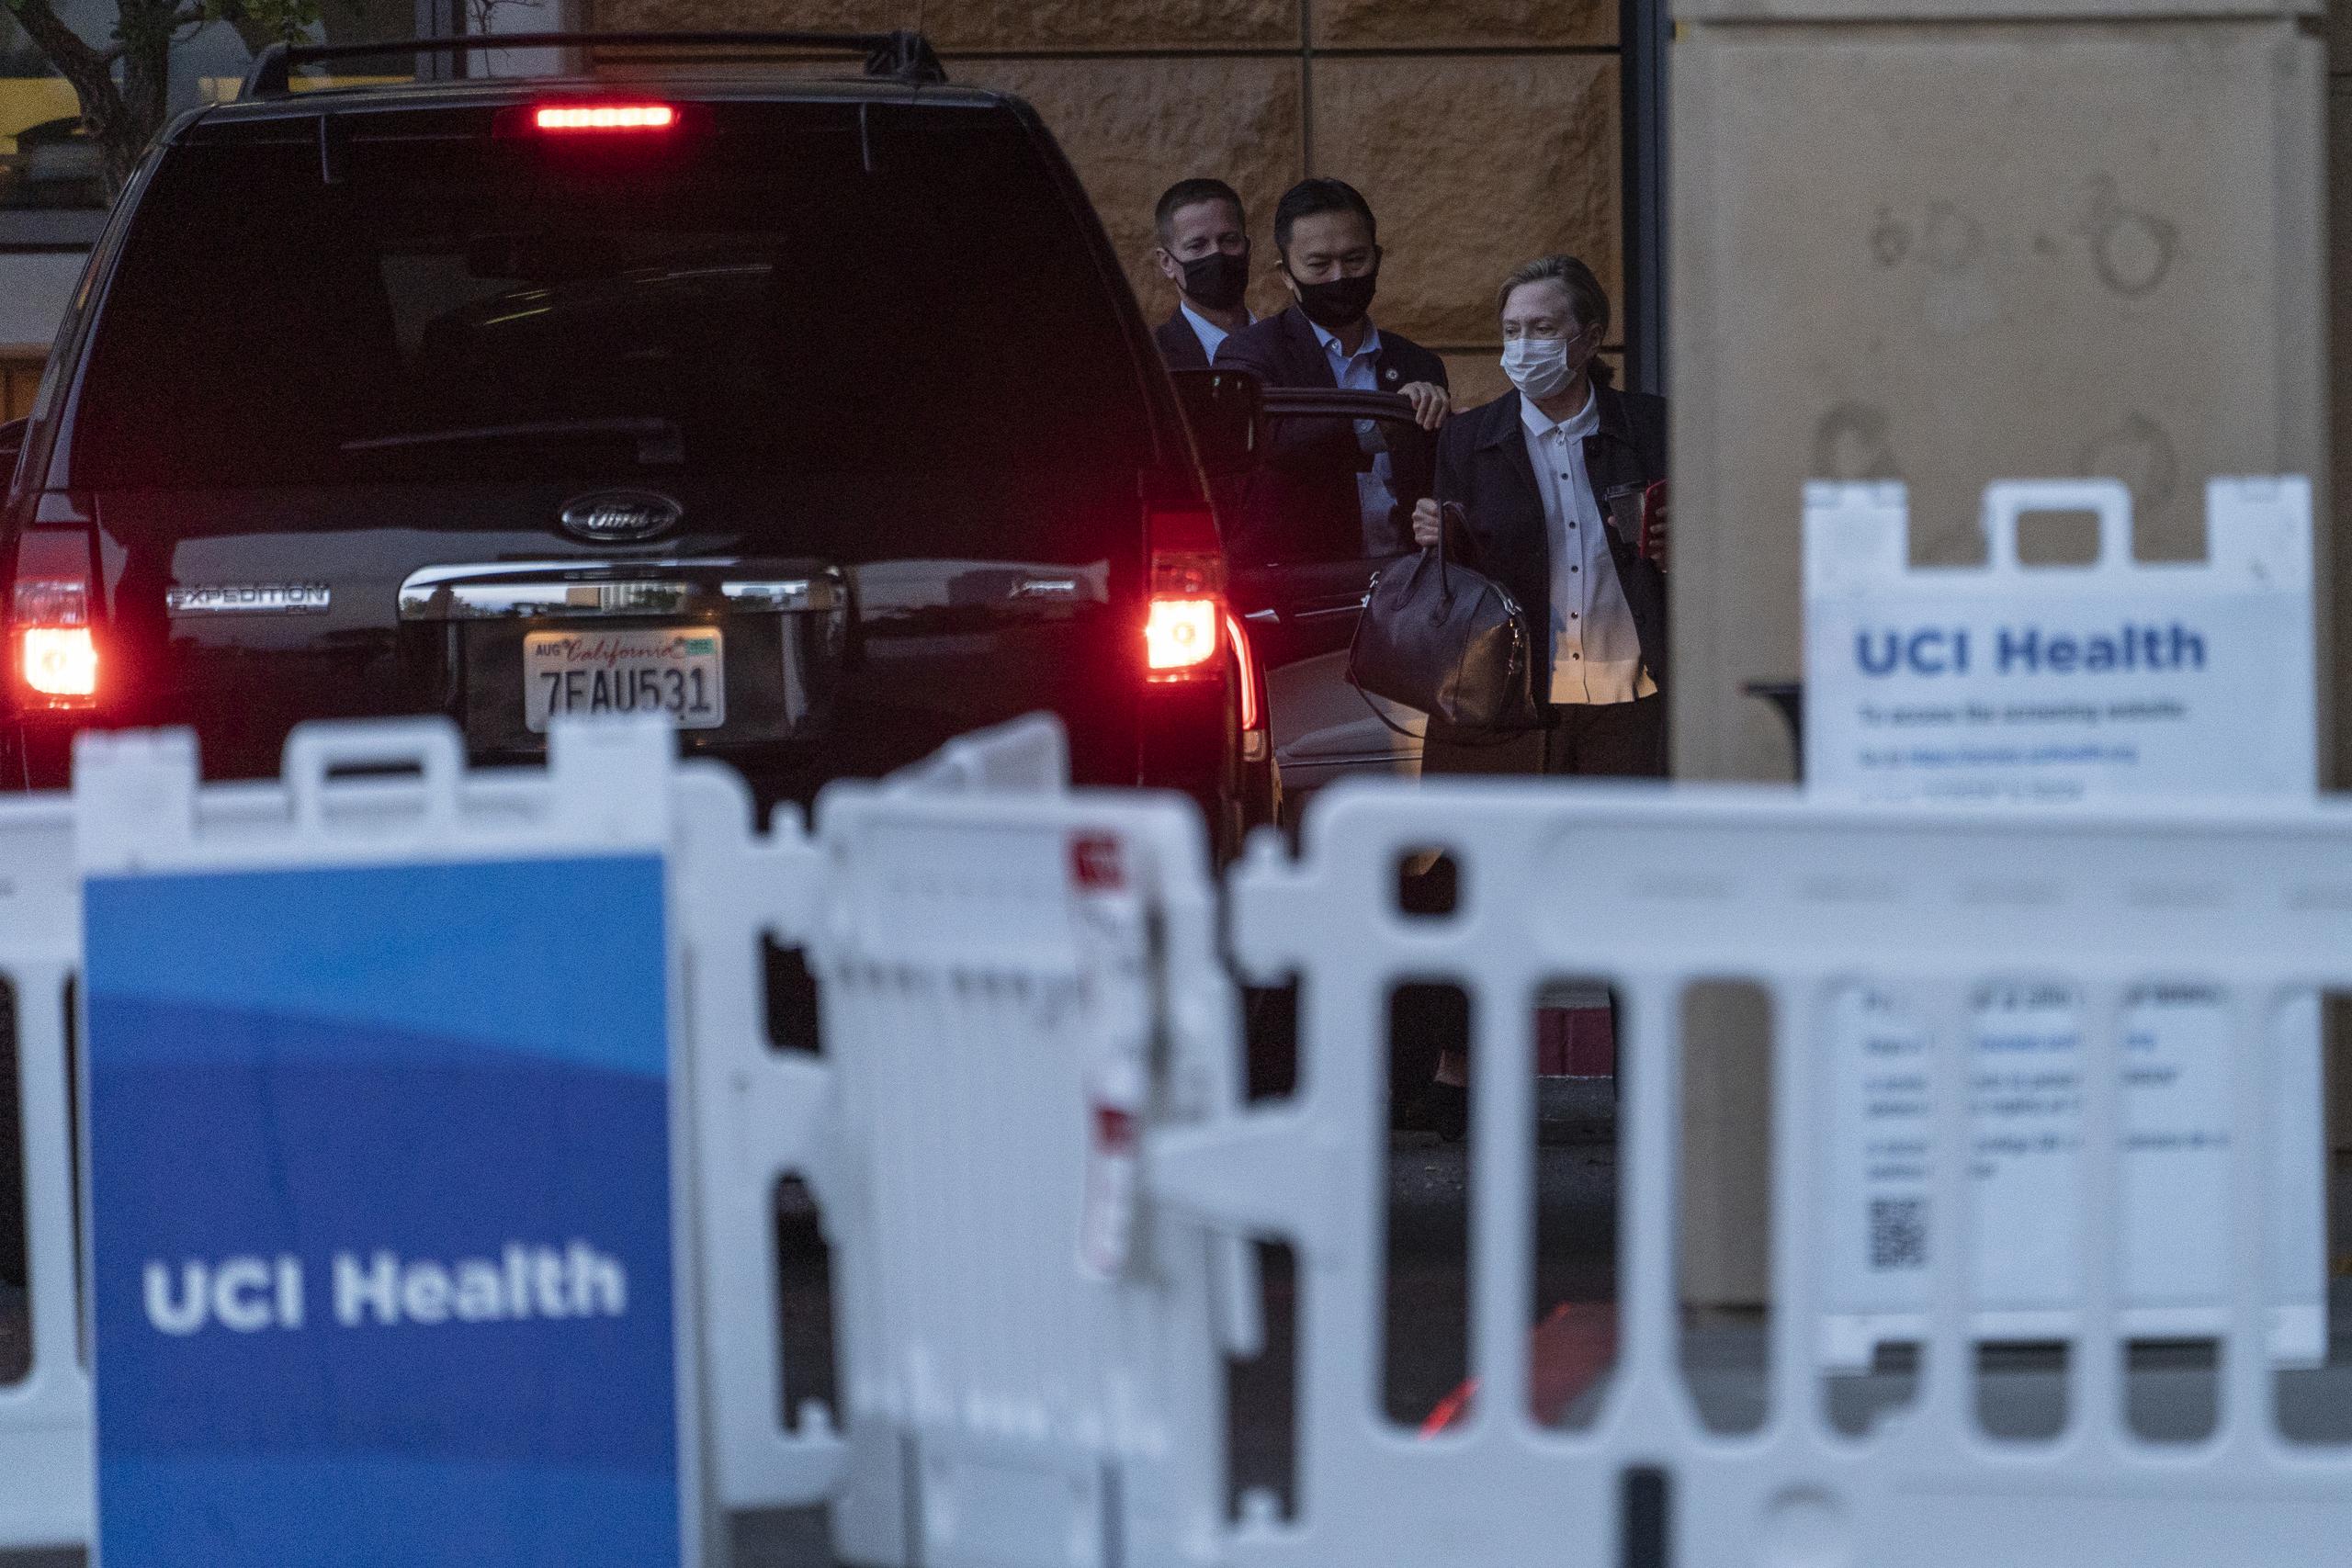 Su esposa Hillary Clinton estuvo con su esposo en el hospital. Ella regresó el sábado con su hija Chelsea Clinton alrededor de las 8 de la mañana del sábado en una SUV acompañada de agentes del Servicio Secreto.